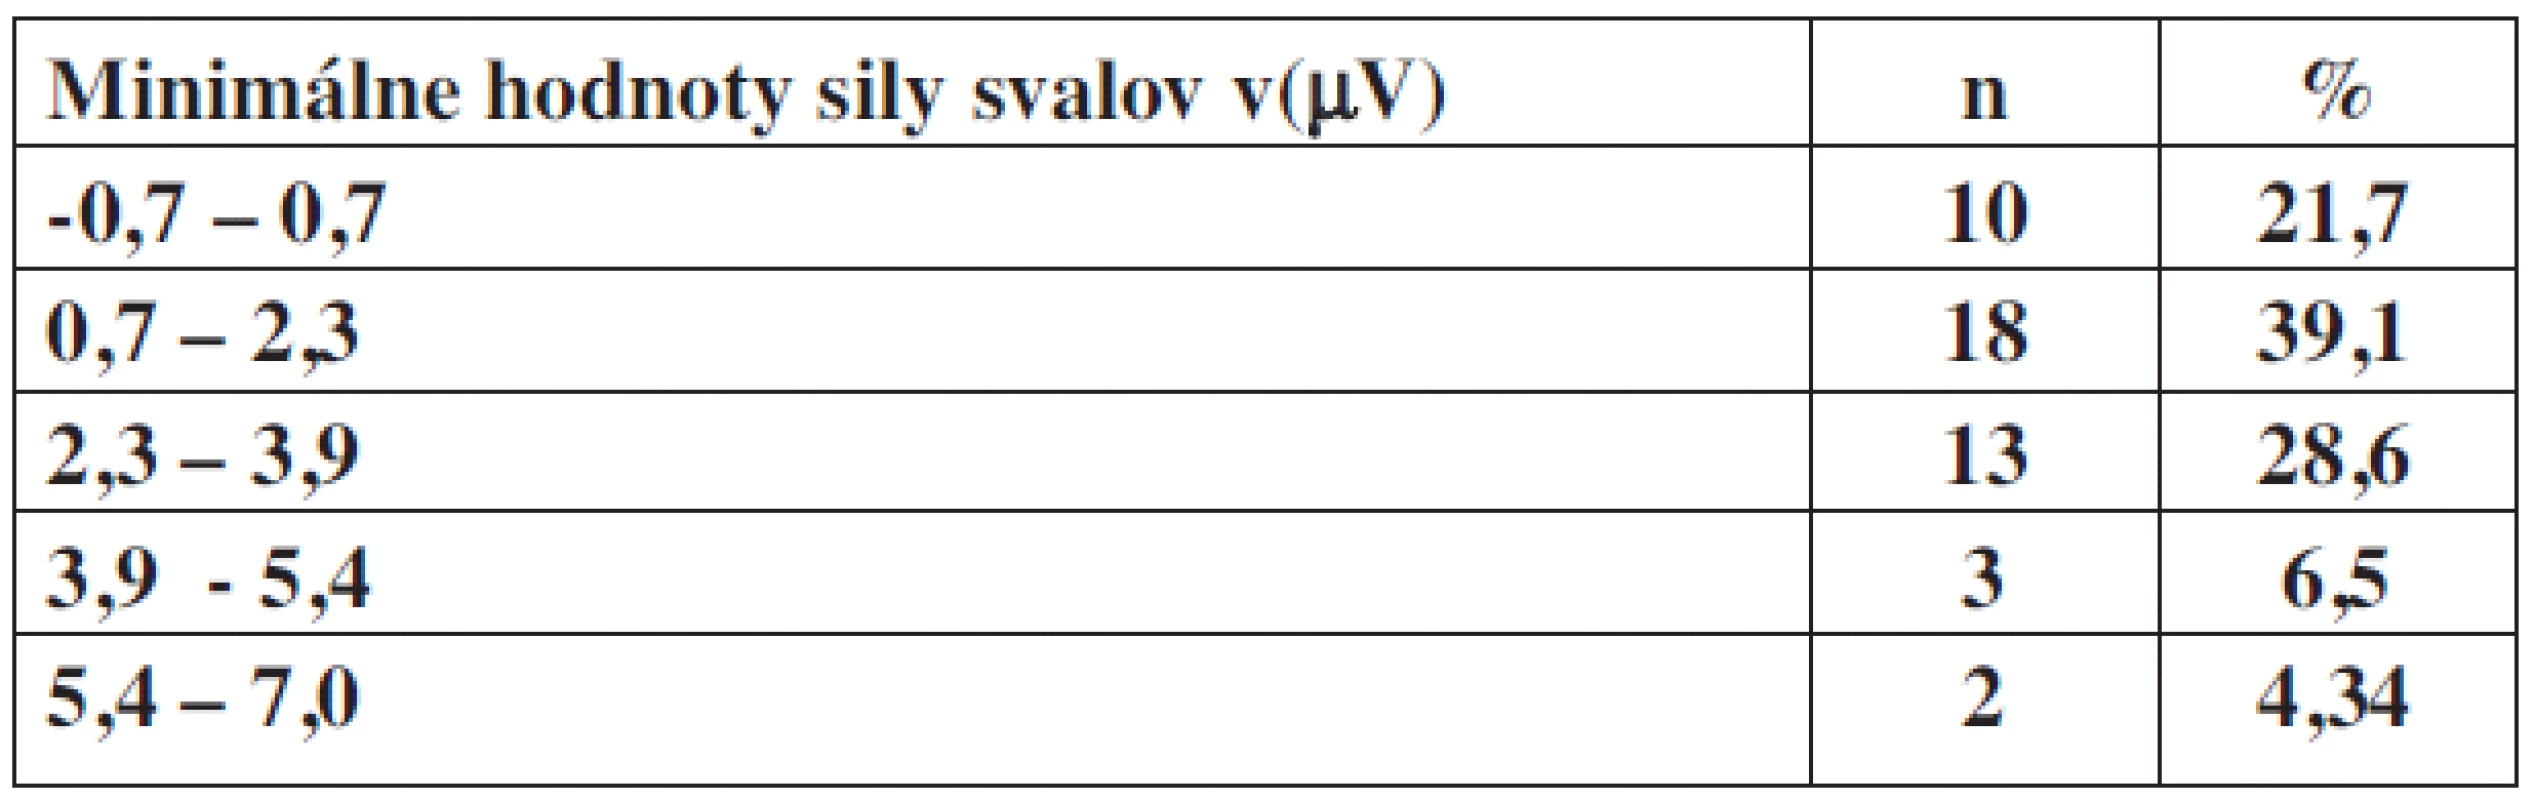 Minimálne hodnoty sily svalov panvového dna v(μV) v percentuálnom zastúpení u inkontinentných pacientok.